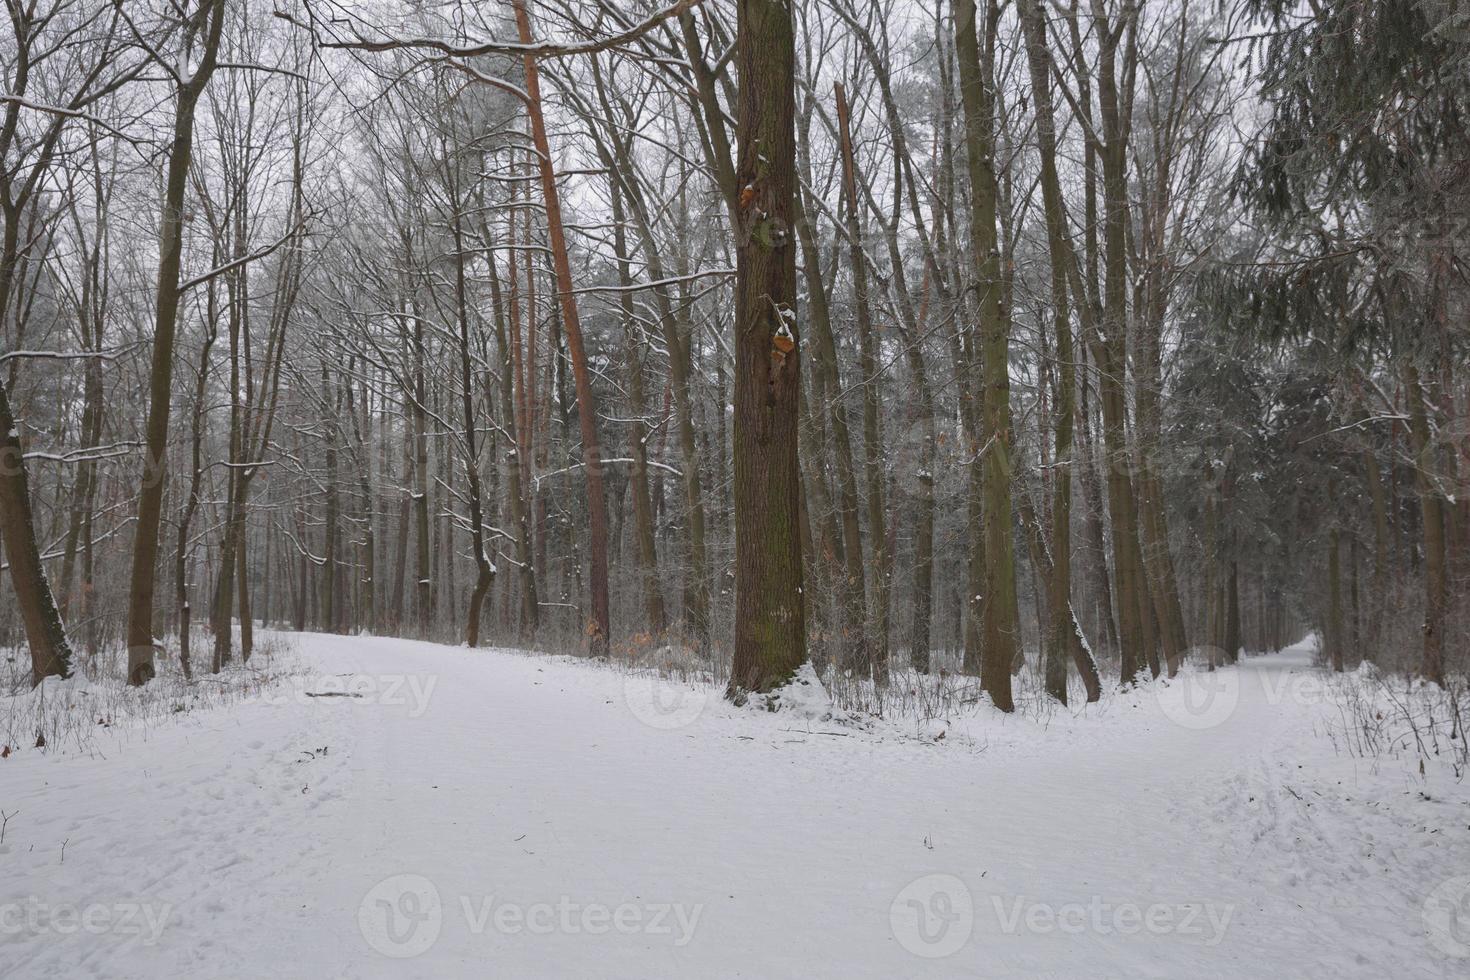 paesaggio forestale invernale foto